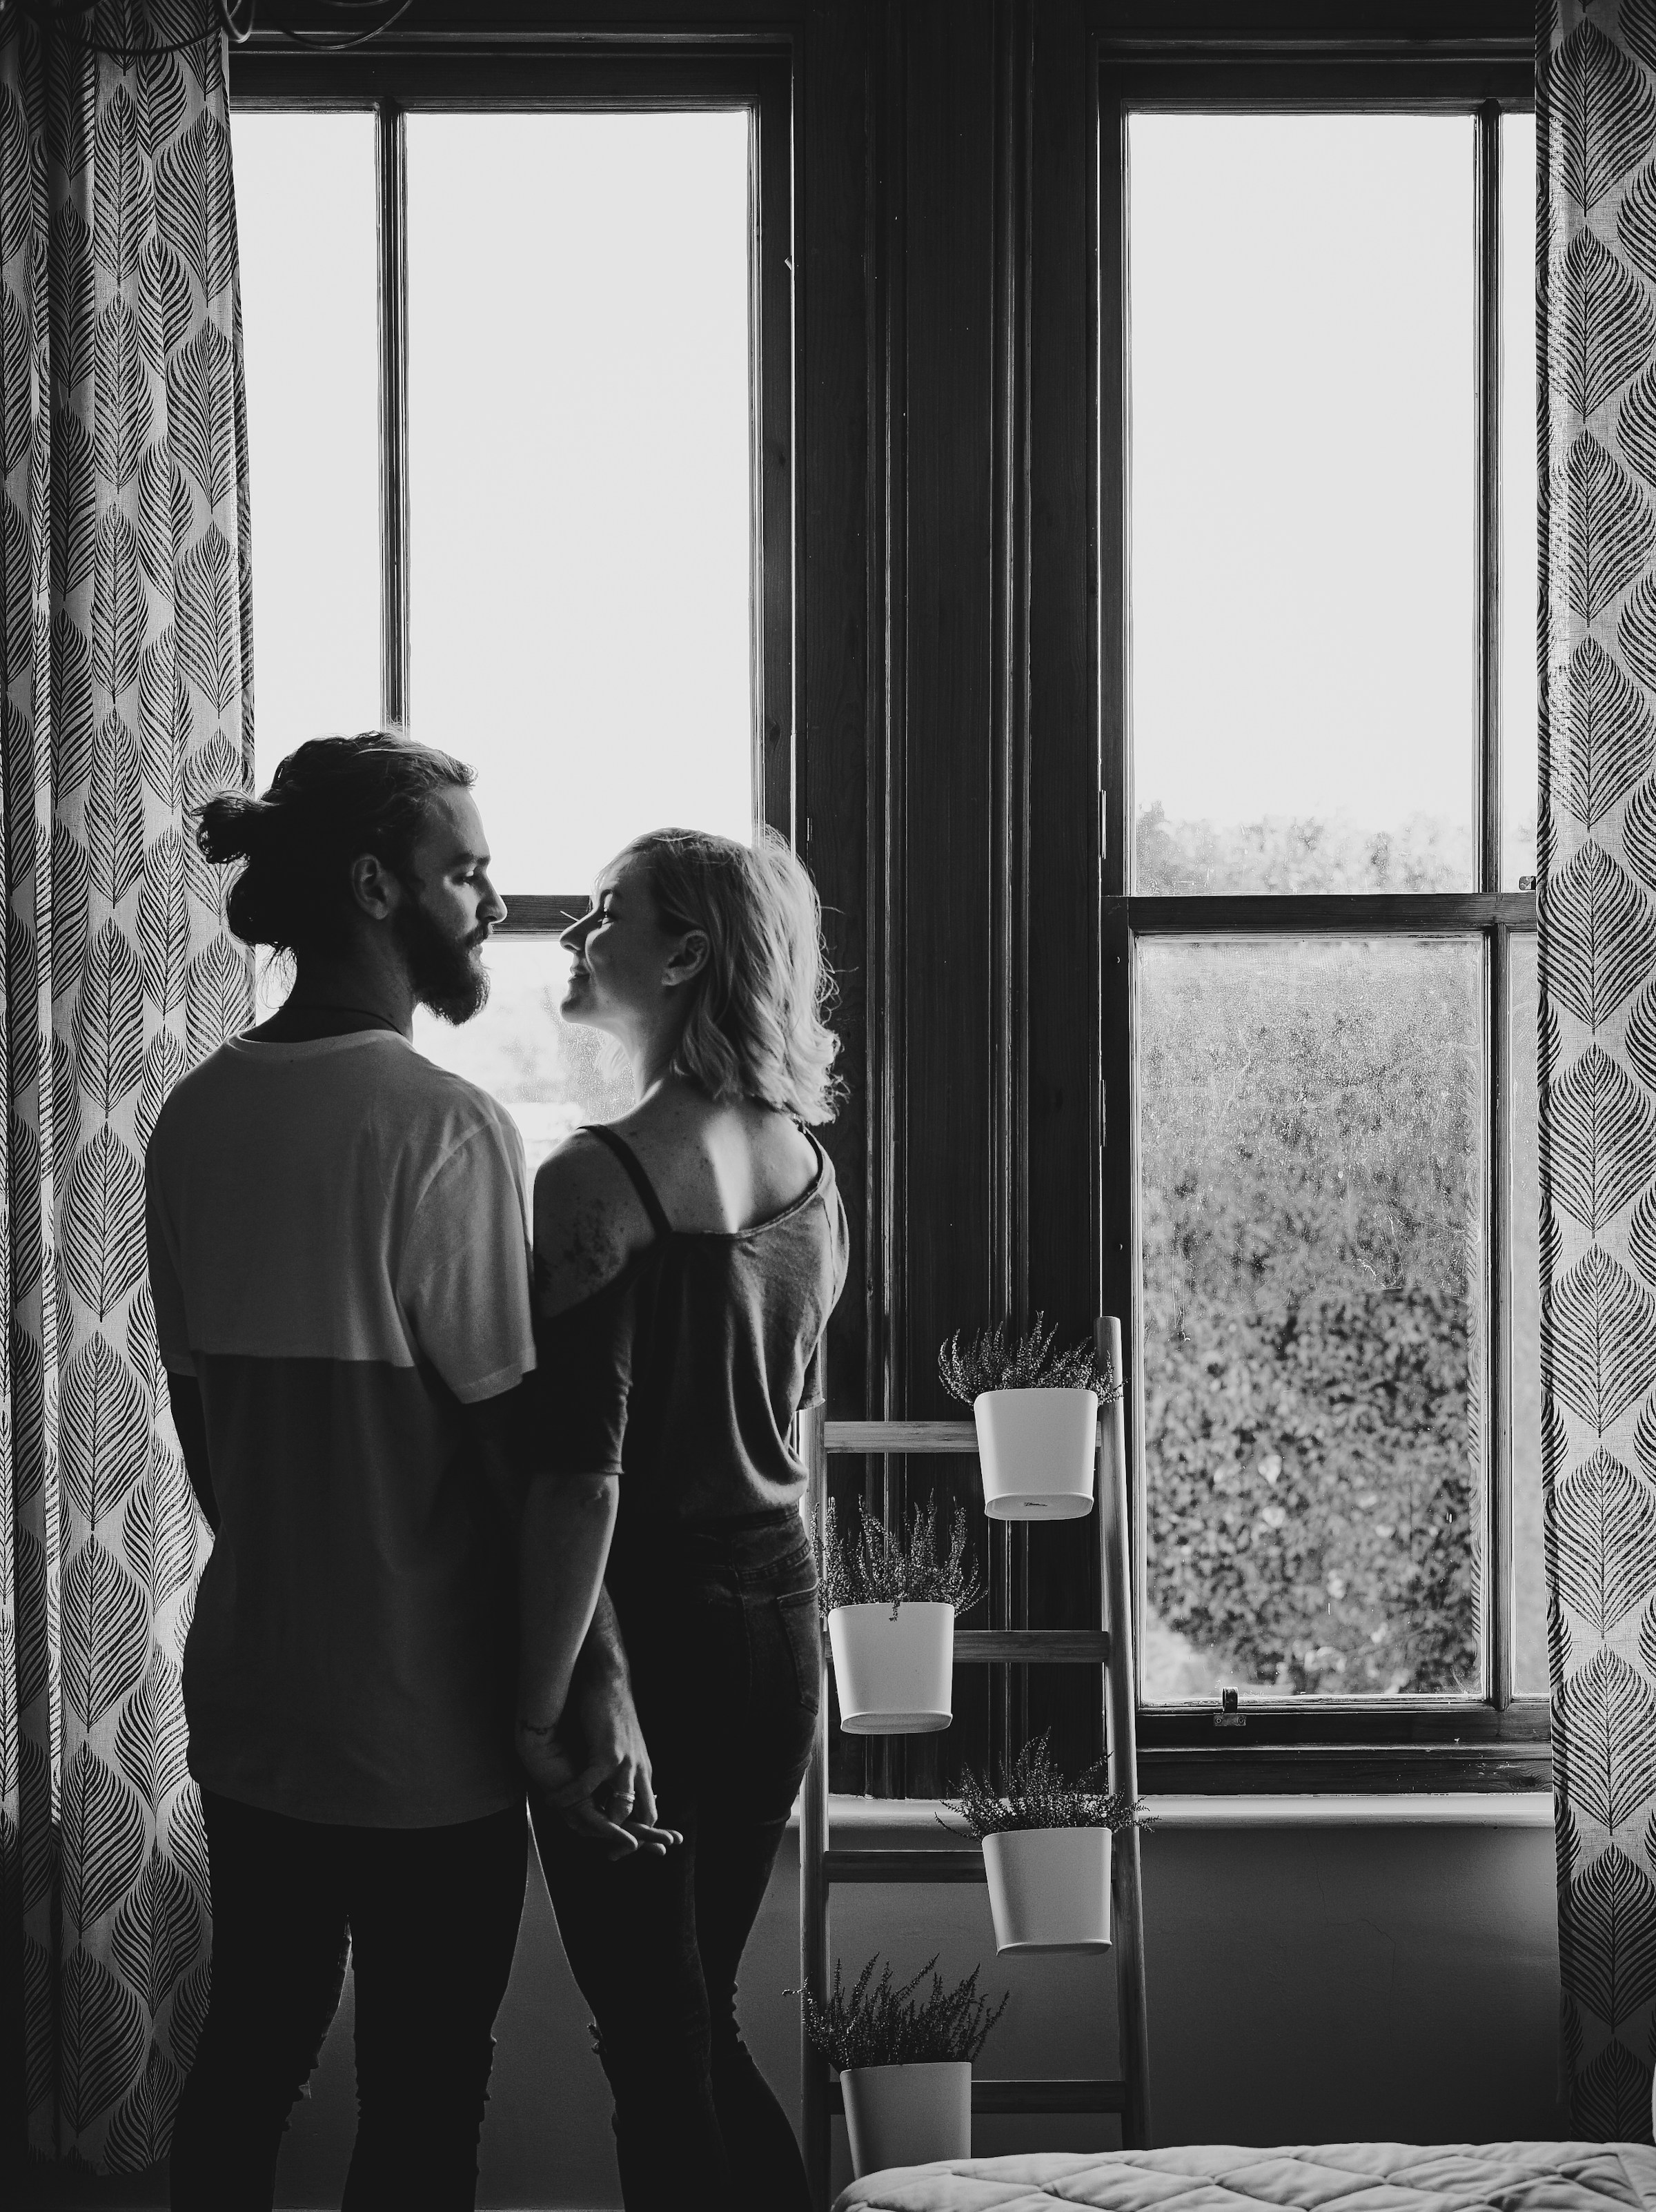 Un couple souriant près d'une fenêtre | Source : Unsplash